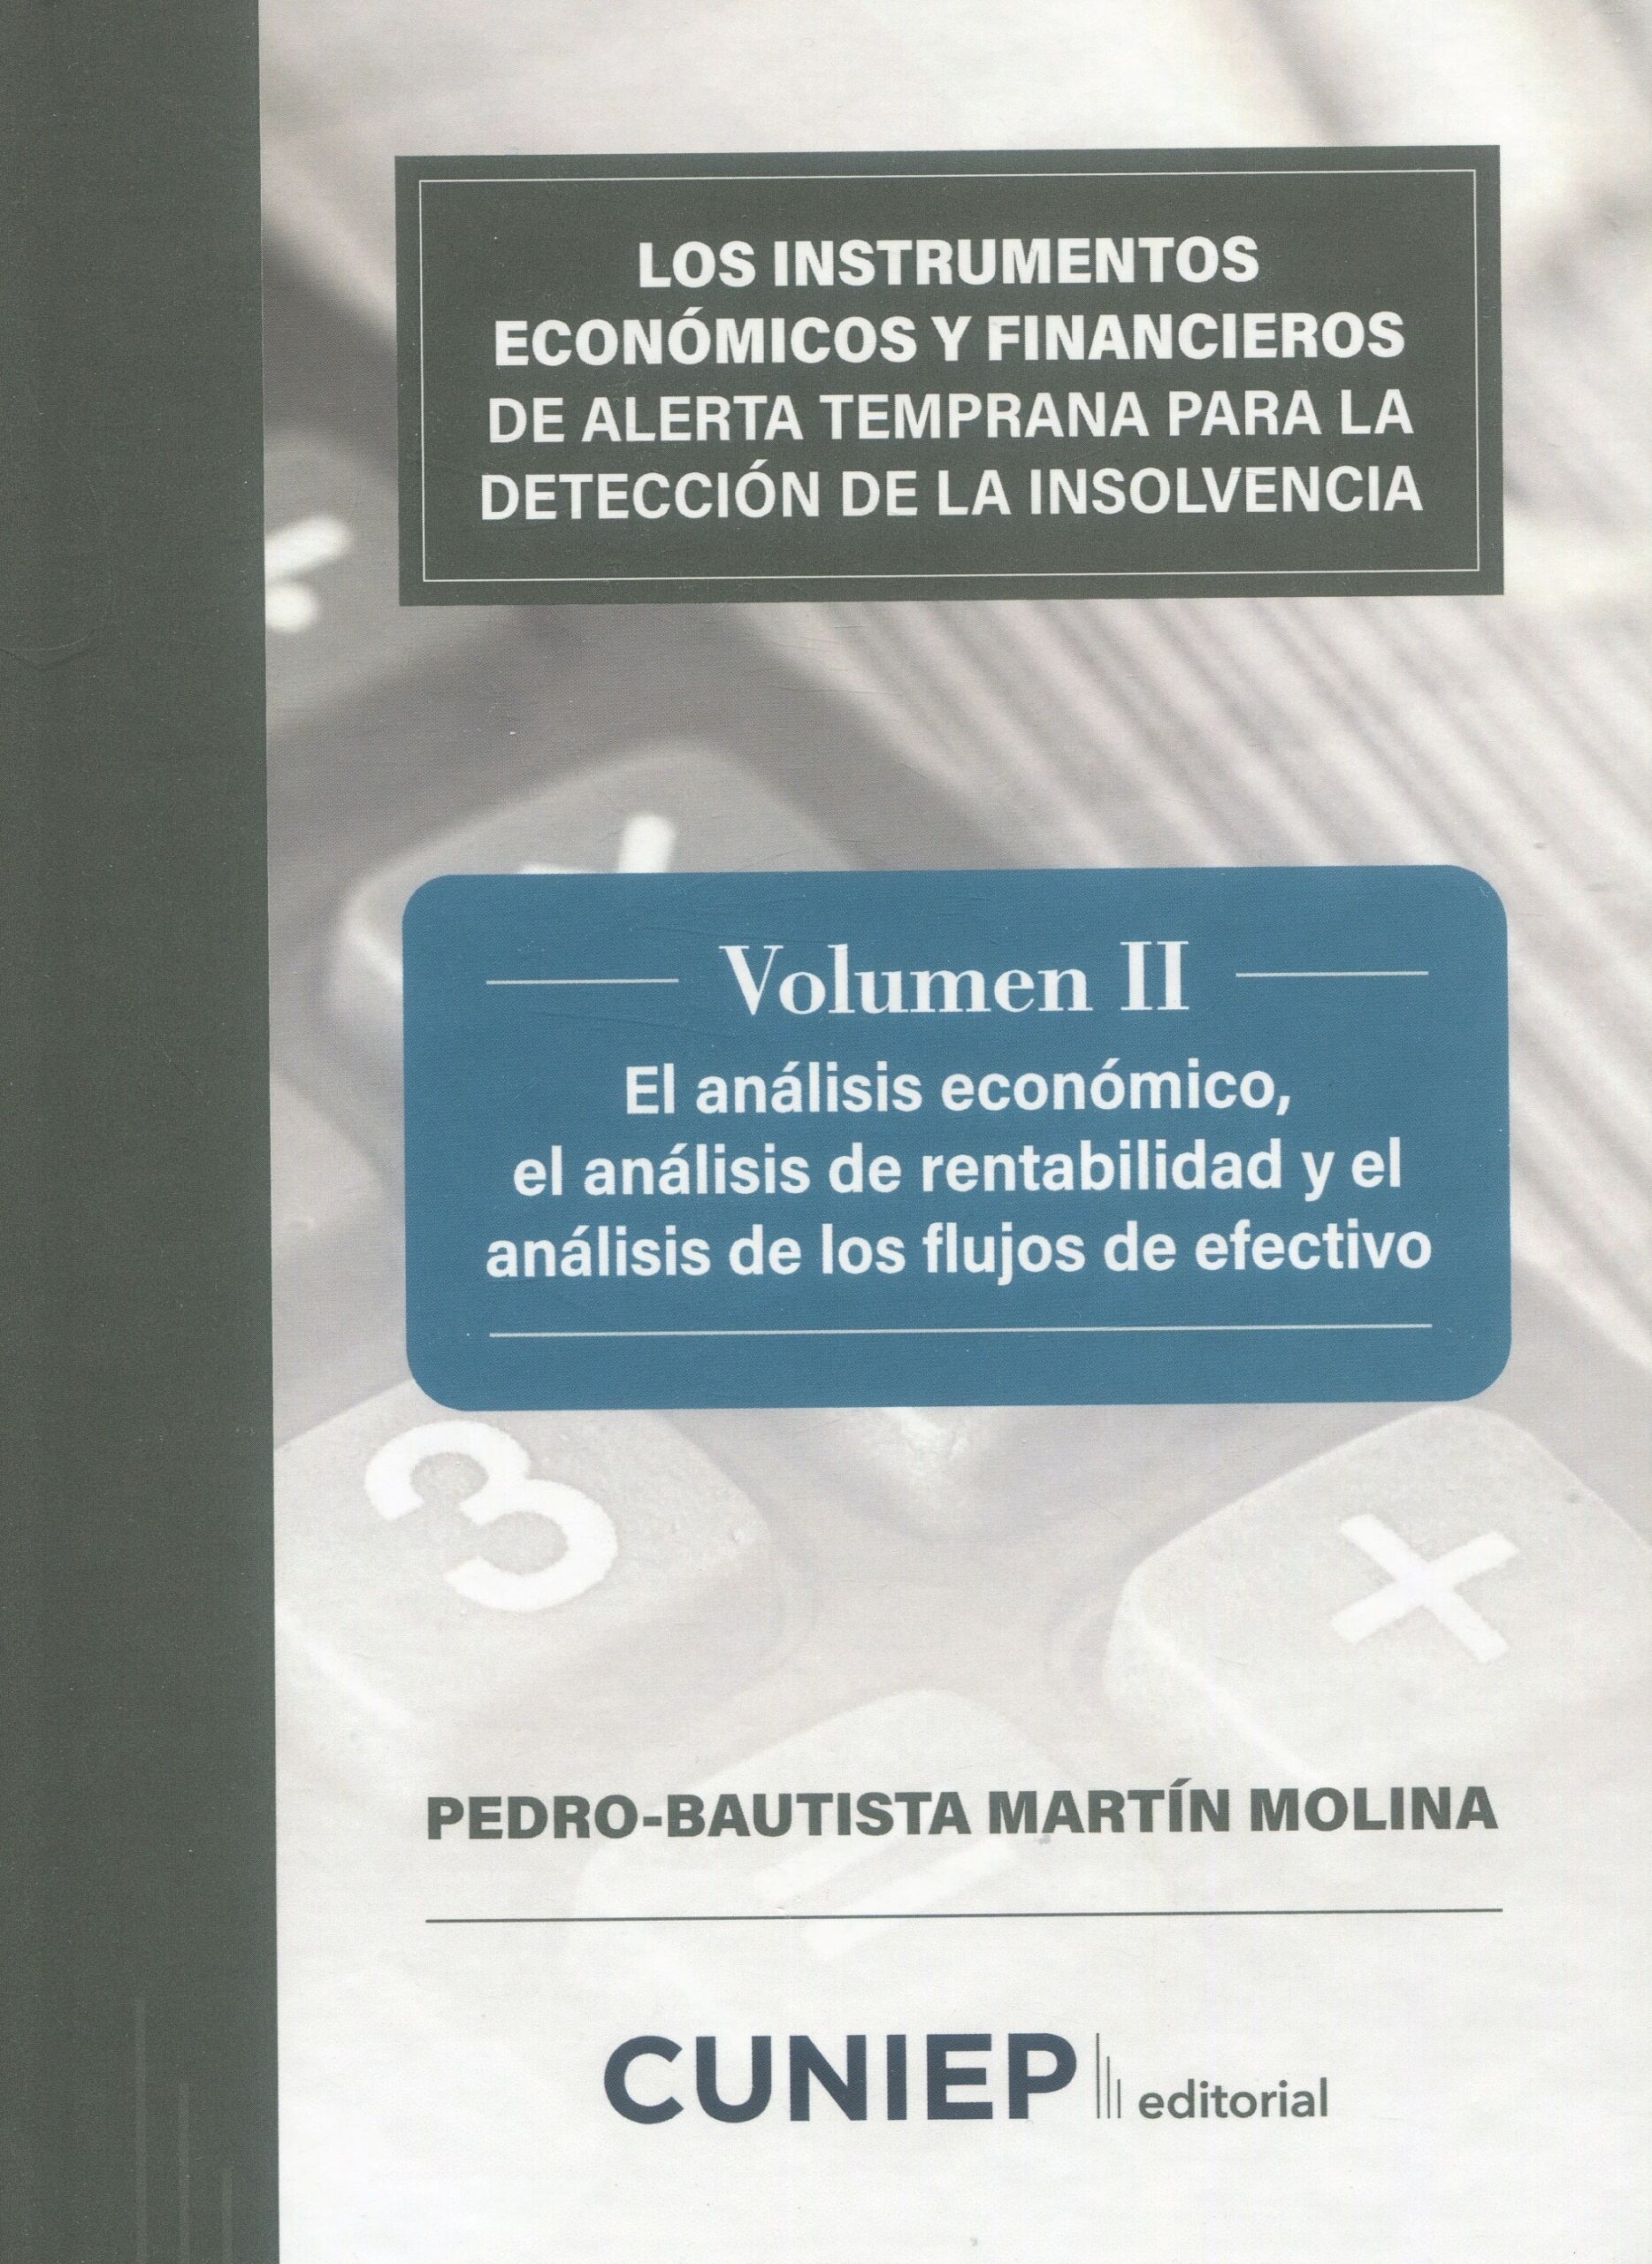 Los instrumentos económicos y financieros de alerta temprana para la detección de la insolvencia Vol.II "El análisis económico, el análisis de rentabilidad y el análisis de los flujos de efectivo"